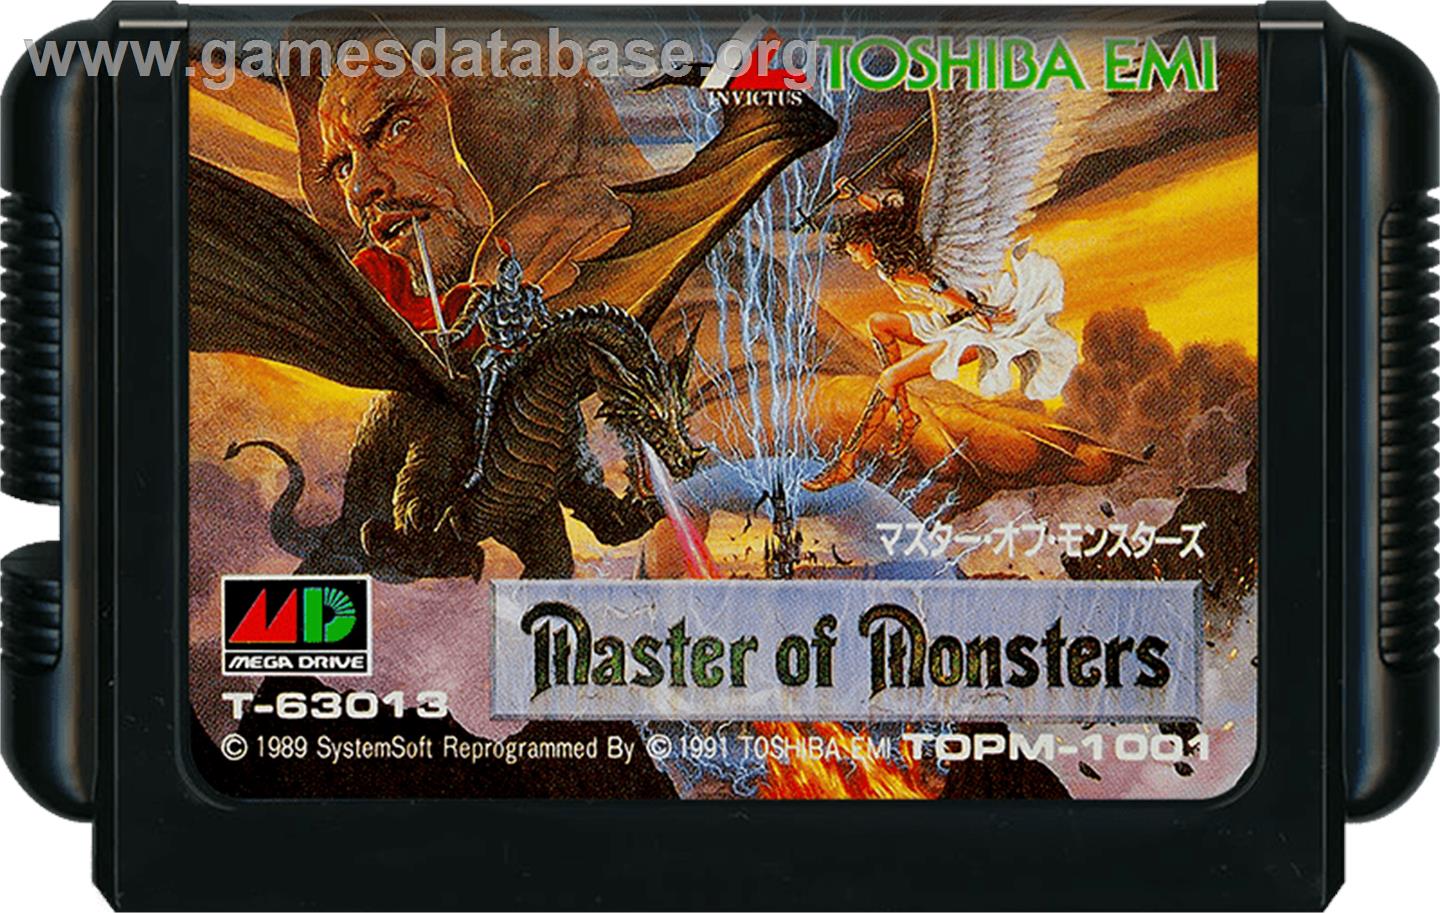 Master of Monsters - Sega Genesis - Artwork - Cartridge